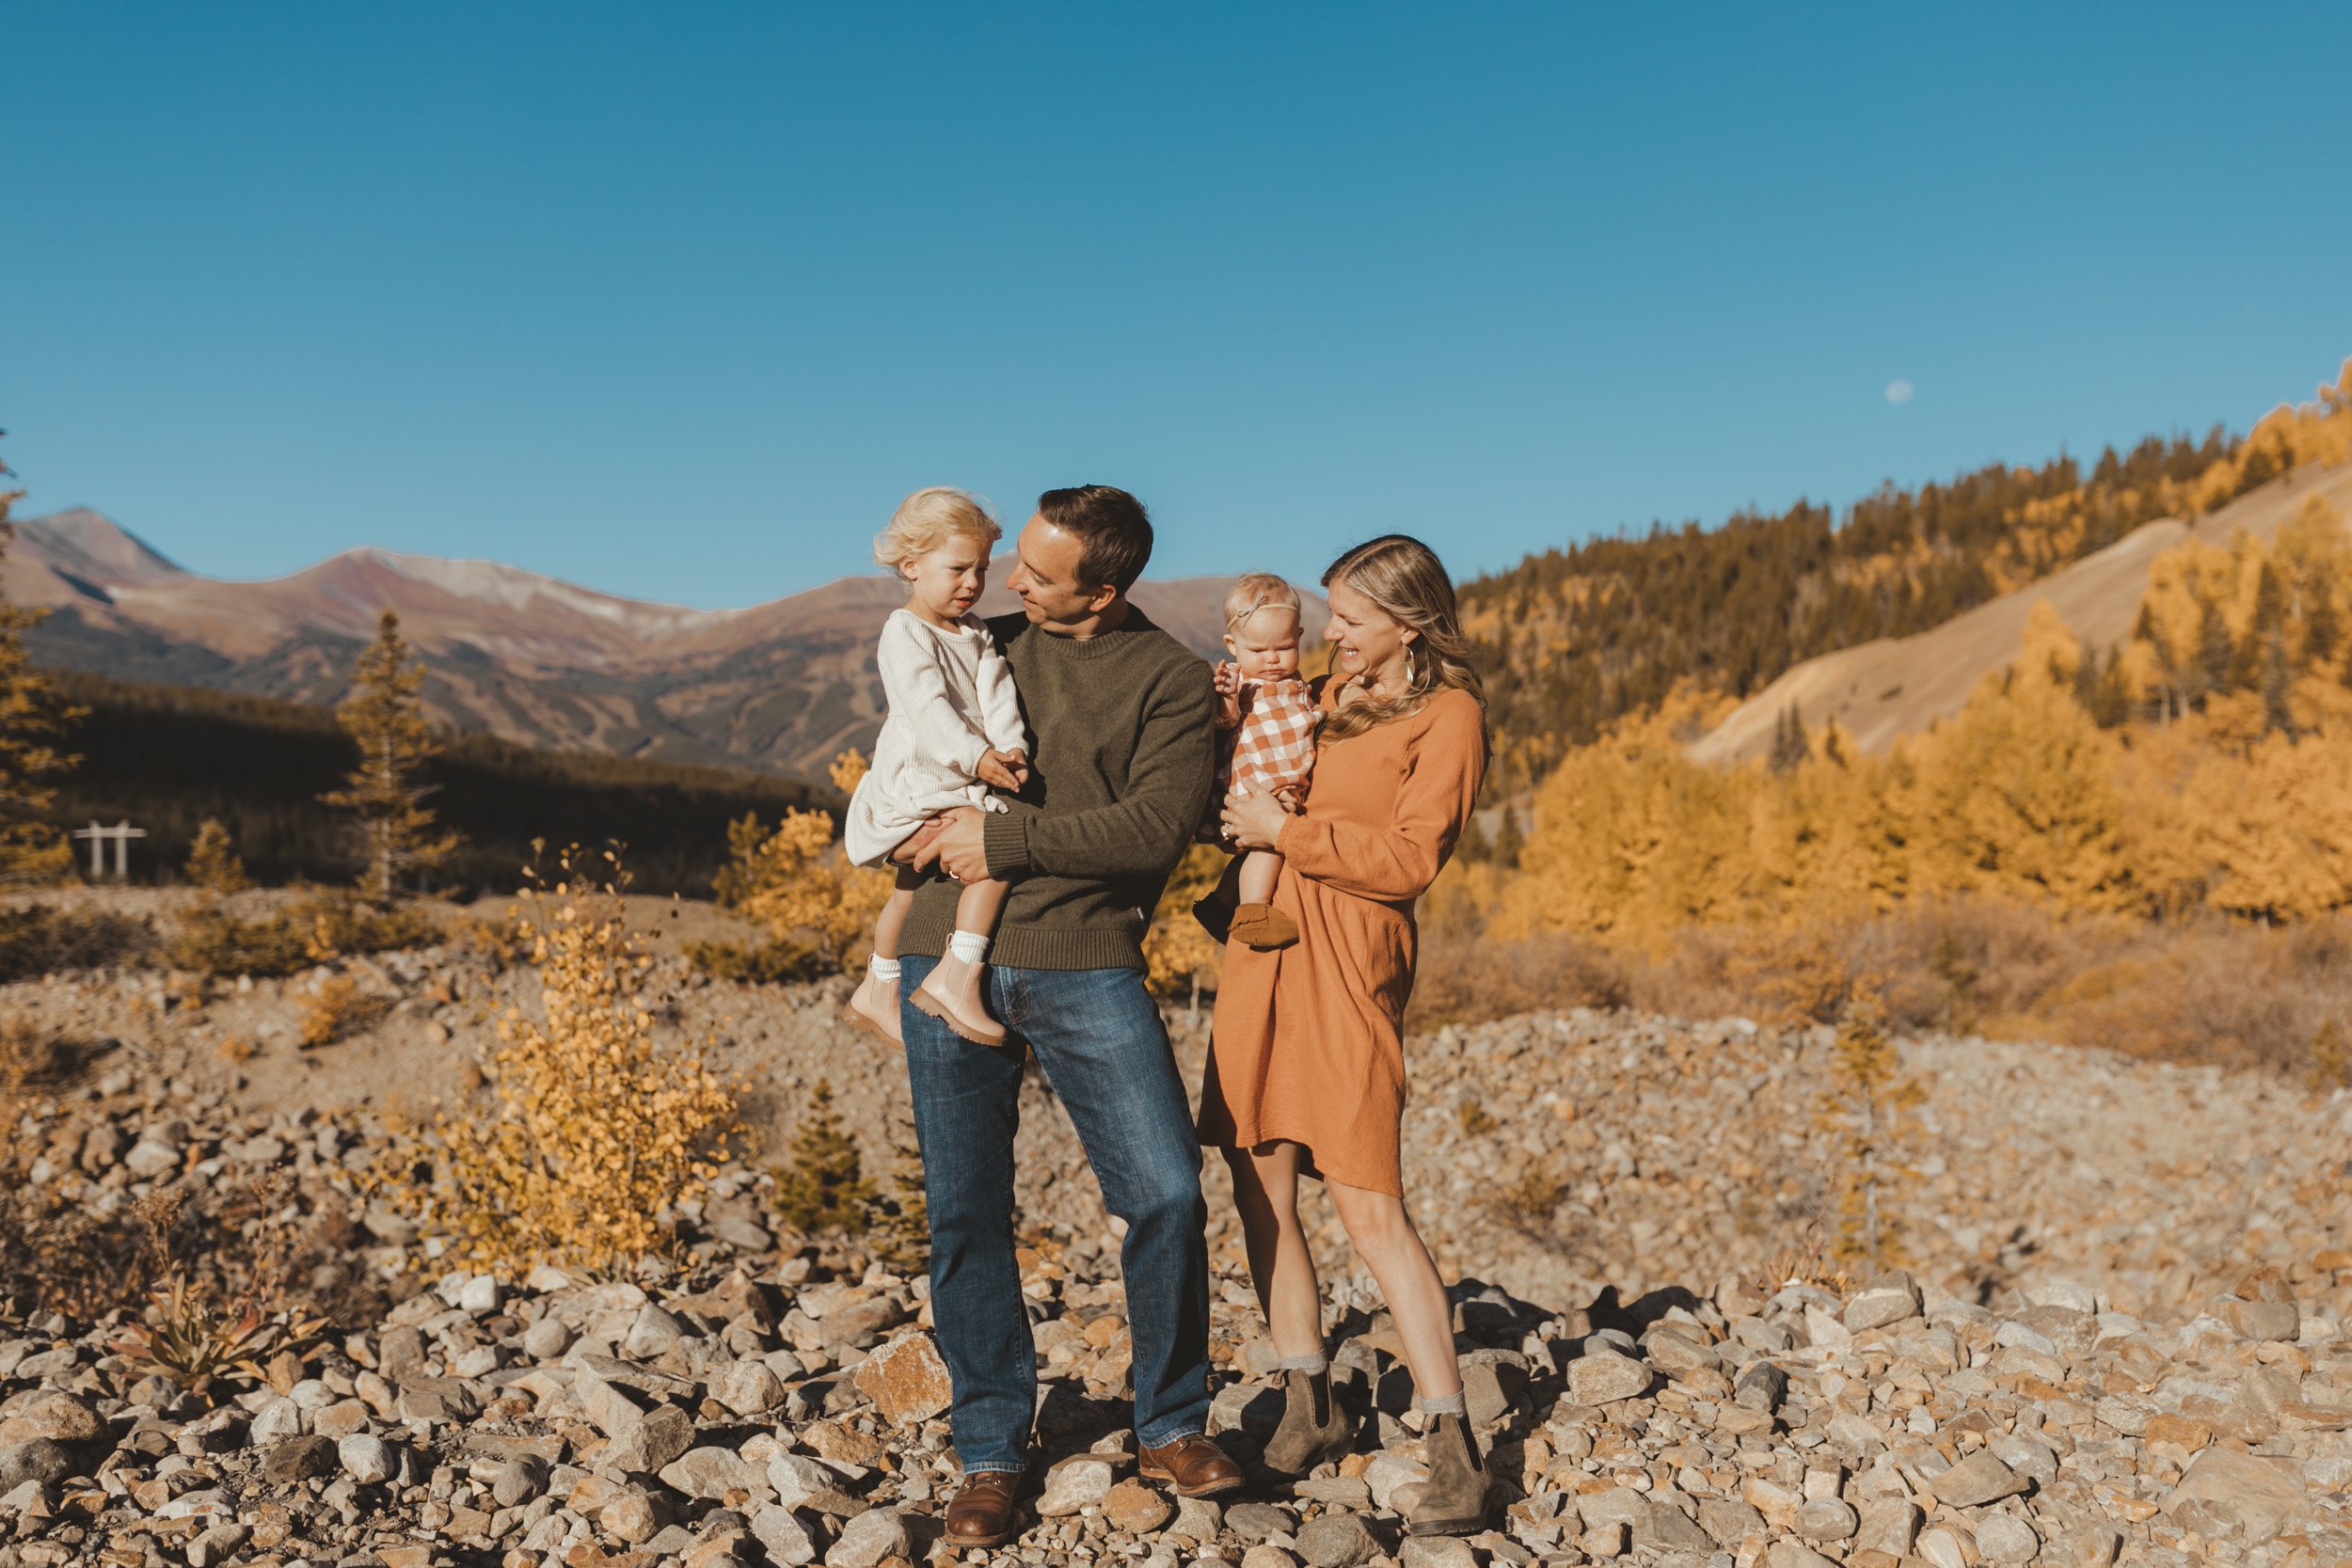 breckenridge-colorado-mountain-family-photoshoot-3.jpg